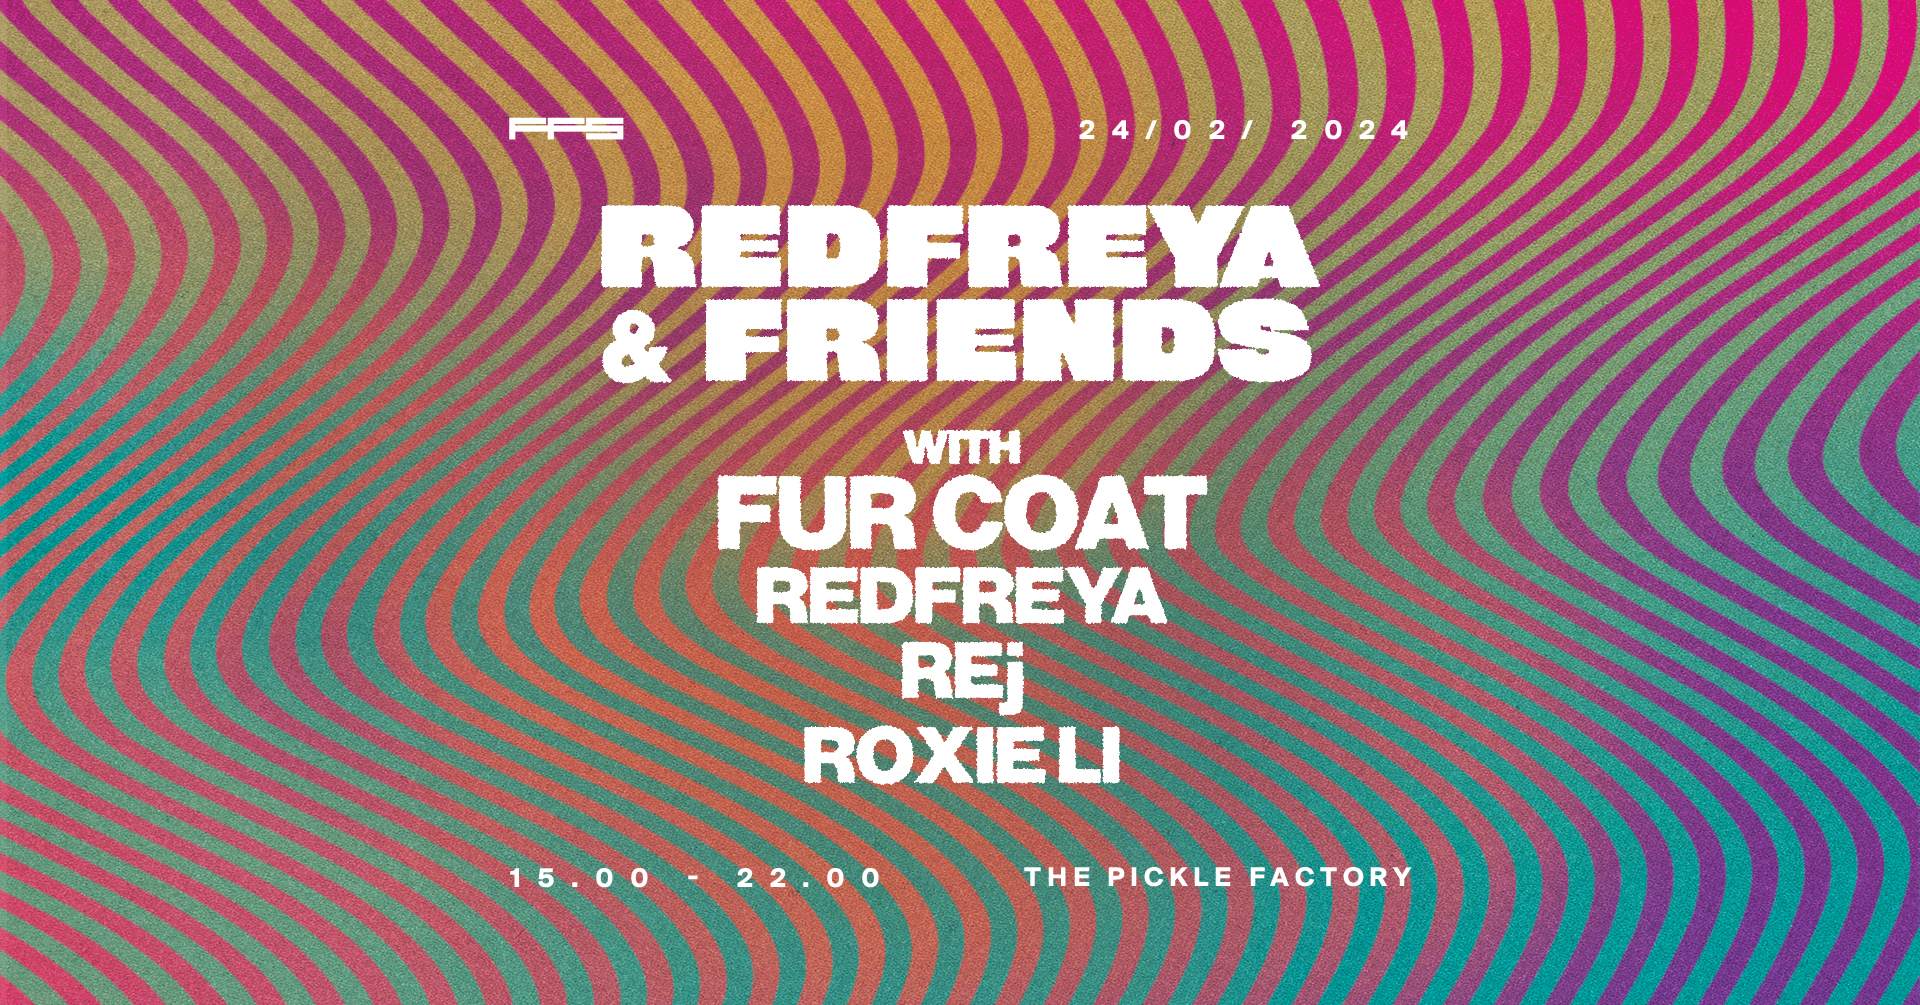 Redfreya & Friends with Fur Coat - フライヤー表